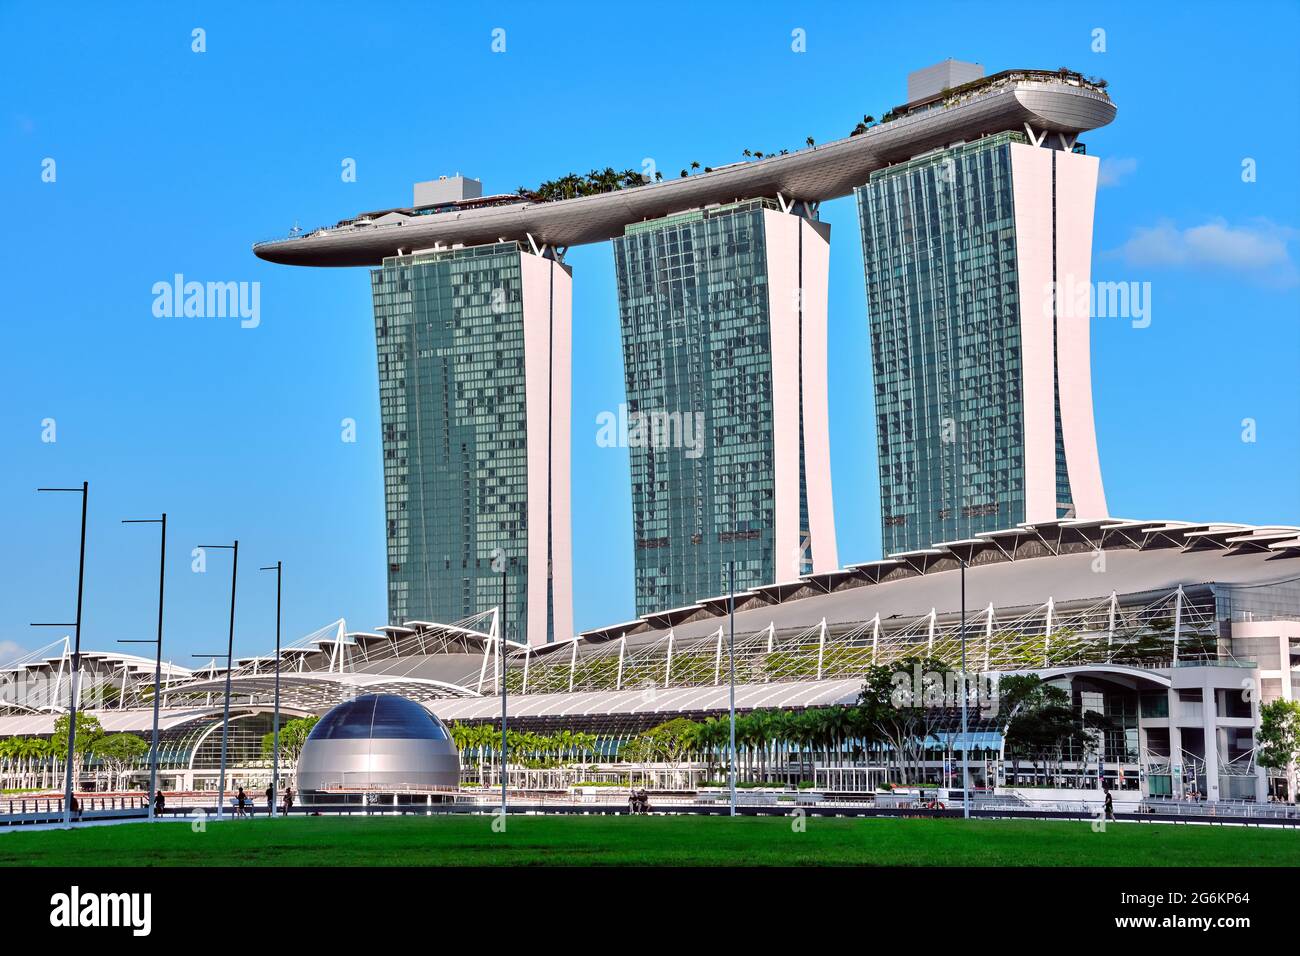 Ikonischer Blick auf Marina Bay Sands und das Einkaufszentrum Shoppes in Marina Bay an sonnigen Tagen. Berühmte Wahrzeichen des Stadtstaates Singapur. Stockfoto